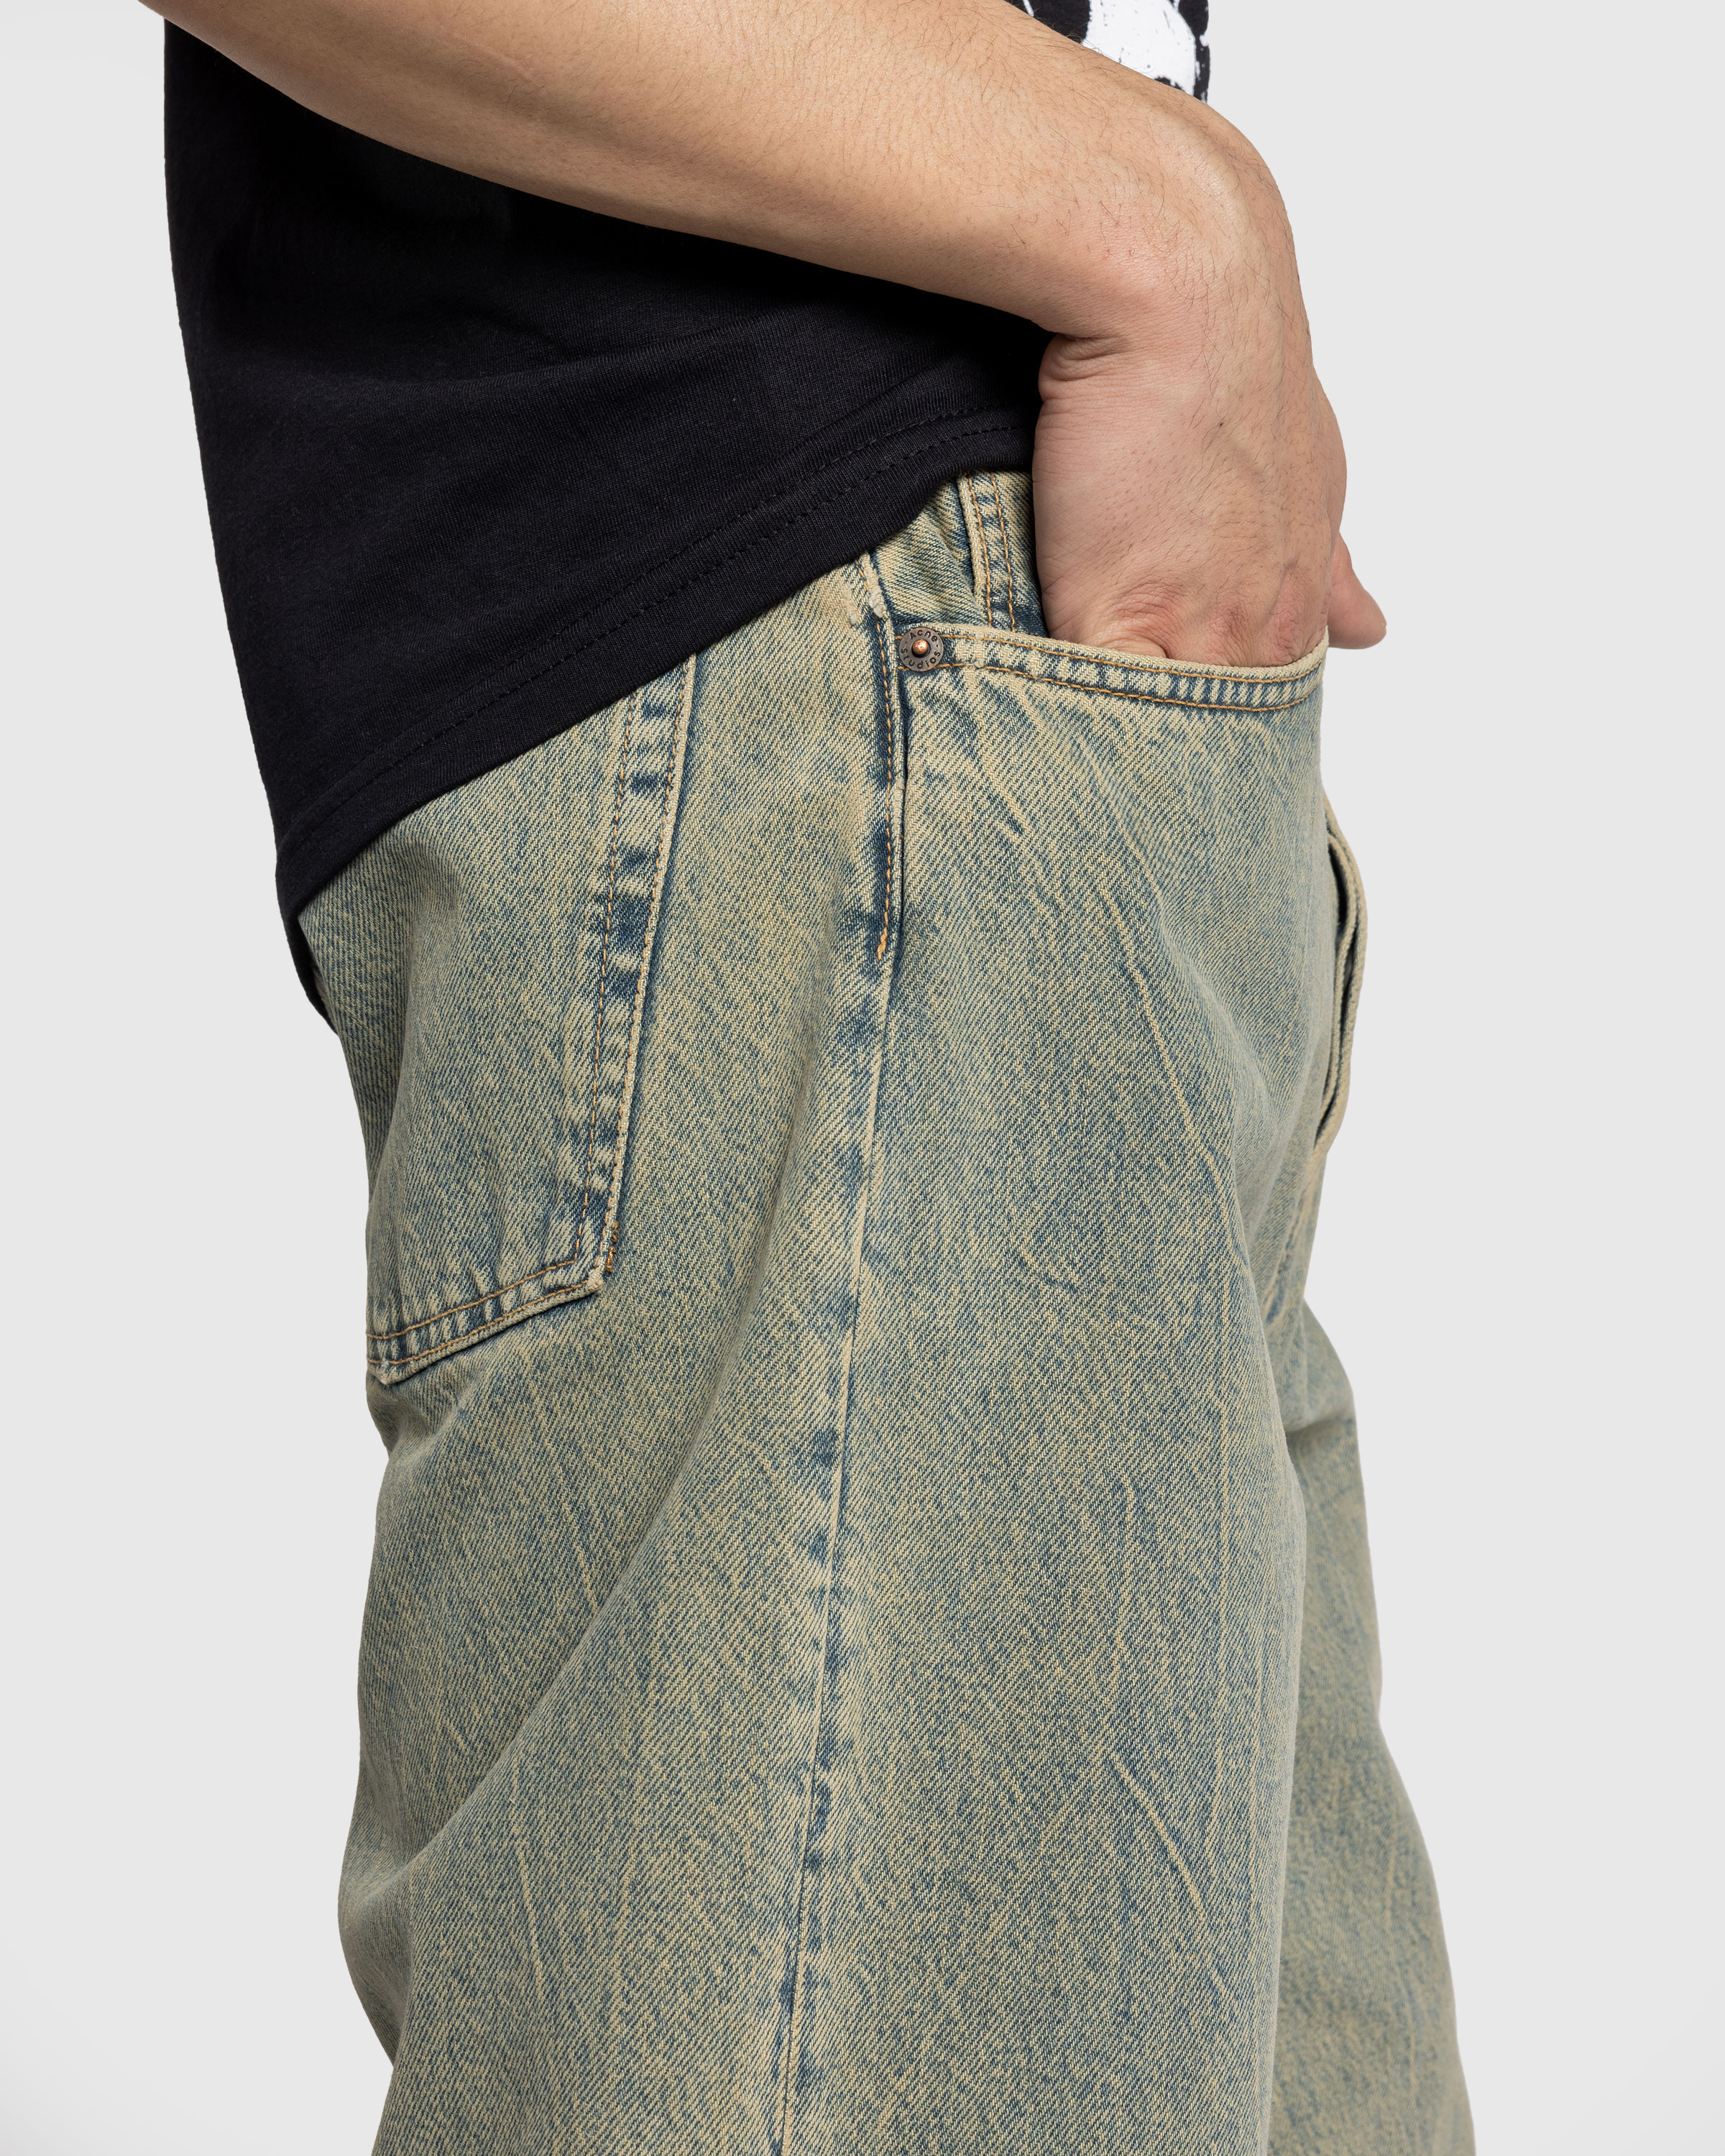 Acne Studios – Loose Fit Jeans 2021M Blue/Beige - Pants - Blue - Image 5